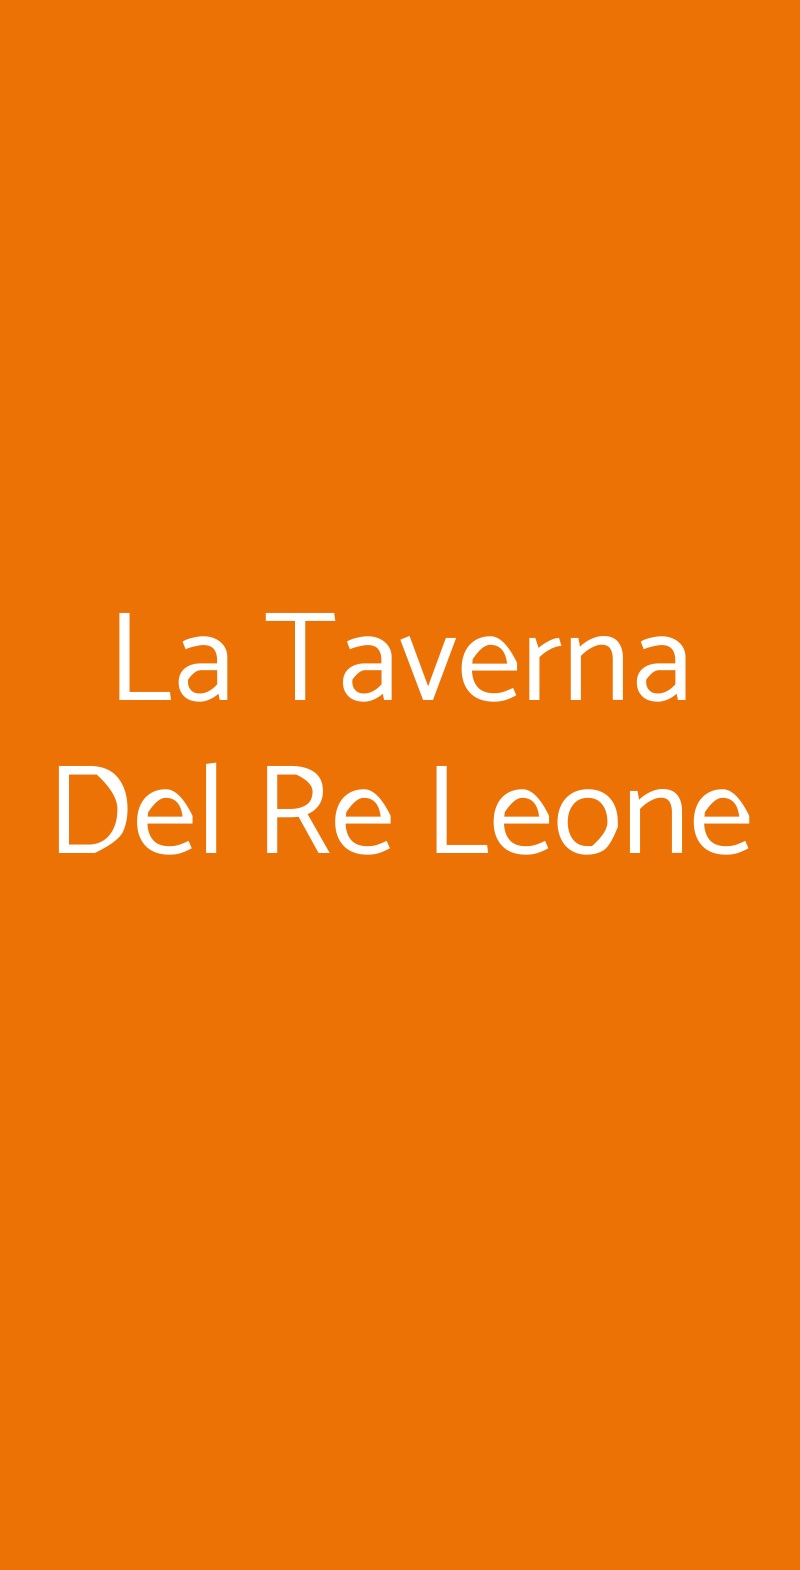 La Taverna Del Re Leone Pozzuoli menù 1 pagina